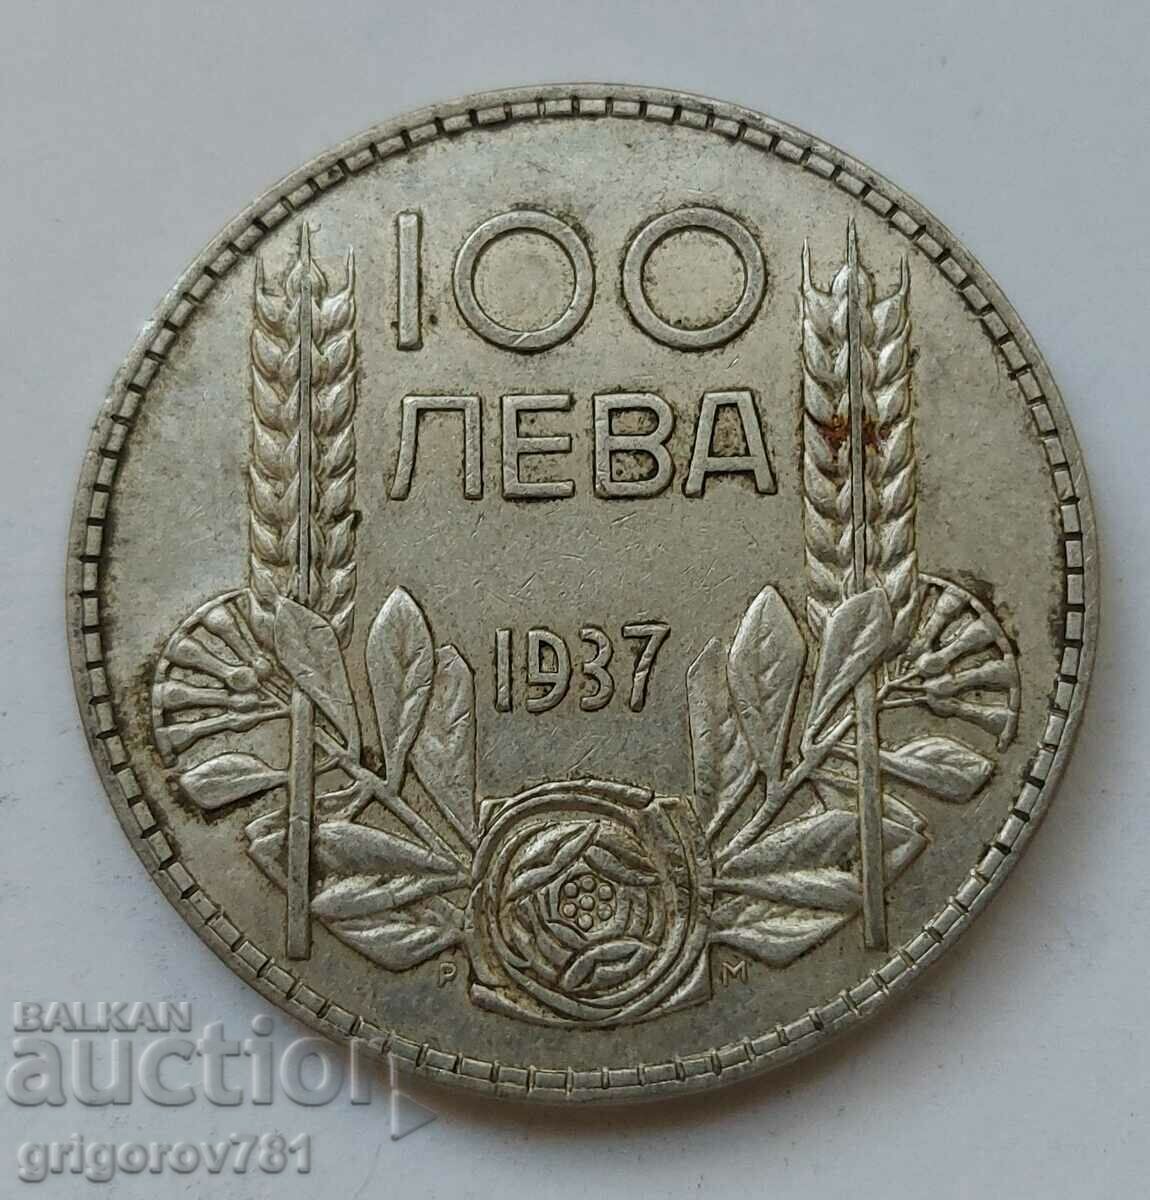 Ασήμι 100 λέβα Βουλγαρία 1937 - ασημένιο νόμισμα #111